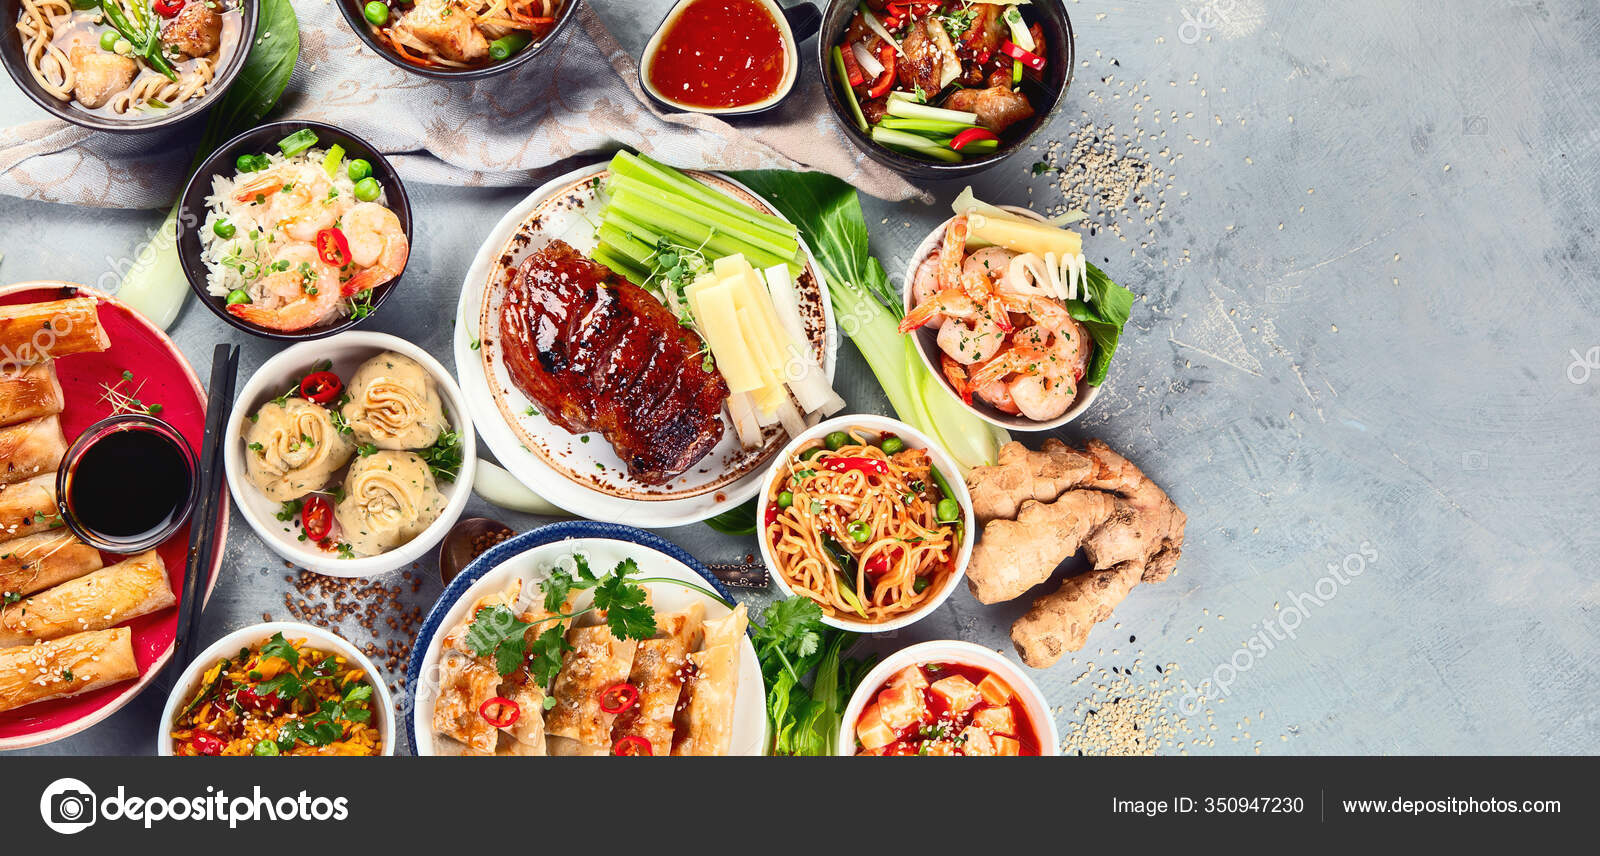 Table de nourriture asiatique avec divers types de nourriture chinoise  image libre de droit par jag_cz © #146805557